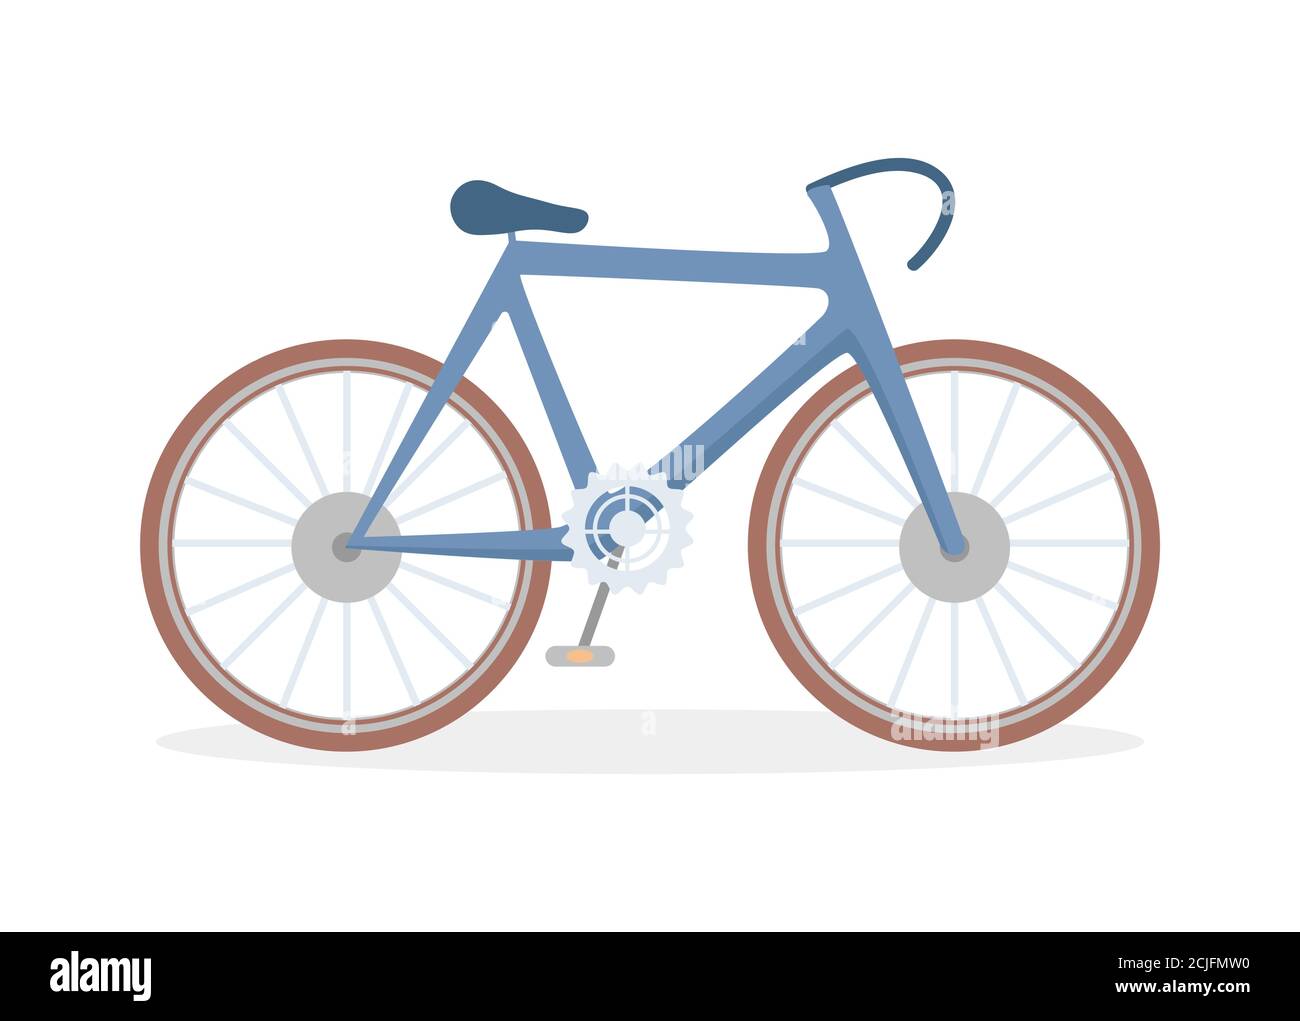 Classico vettore di bicicletta piatta illustrazione isolato su sfondo bianco. Mountain bike a sospensione completa, moderna city bike. Bicicletta a più velocità per adulti. Sport, stile di vita attivo. Illustrazione Vettoriale